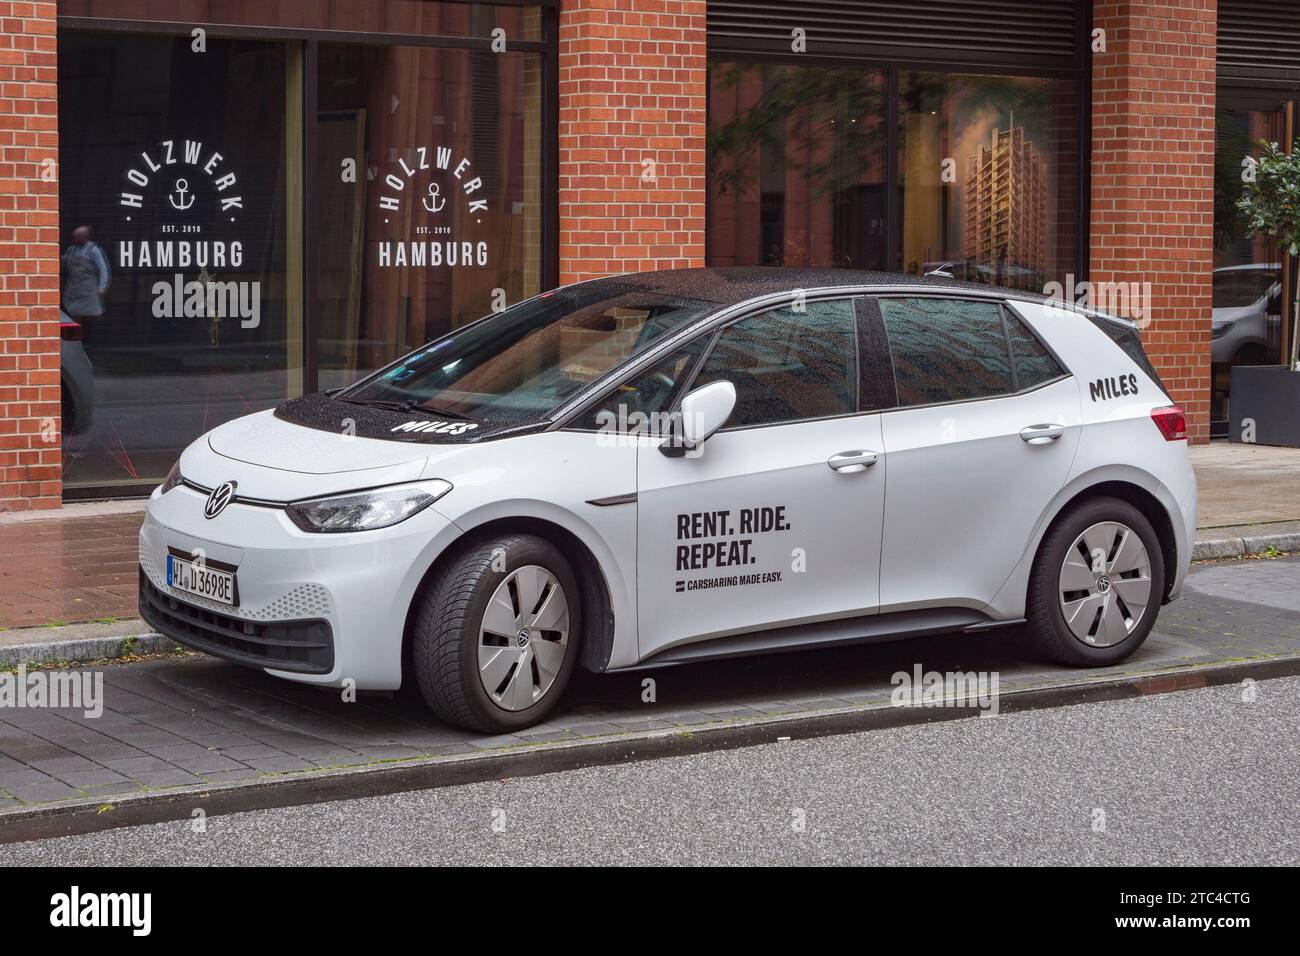 Une voiture d'autopartage Miles (« Rent.Ride.Repeat » « Carsharing Made Easy ») garée à Hambourg, en Allemagne. Banque D'Images